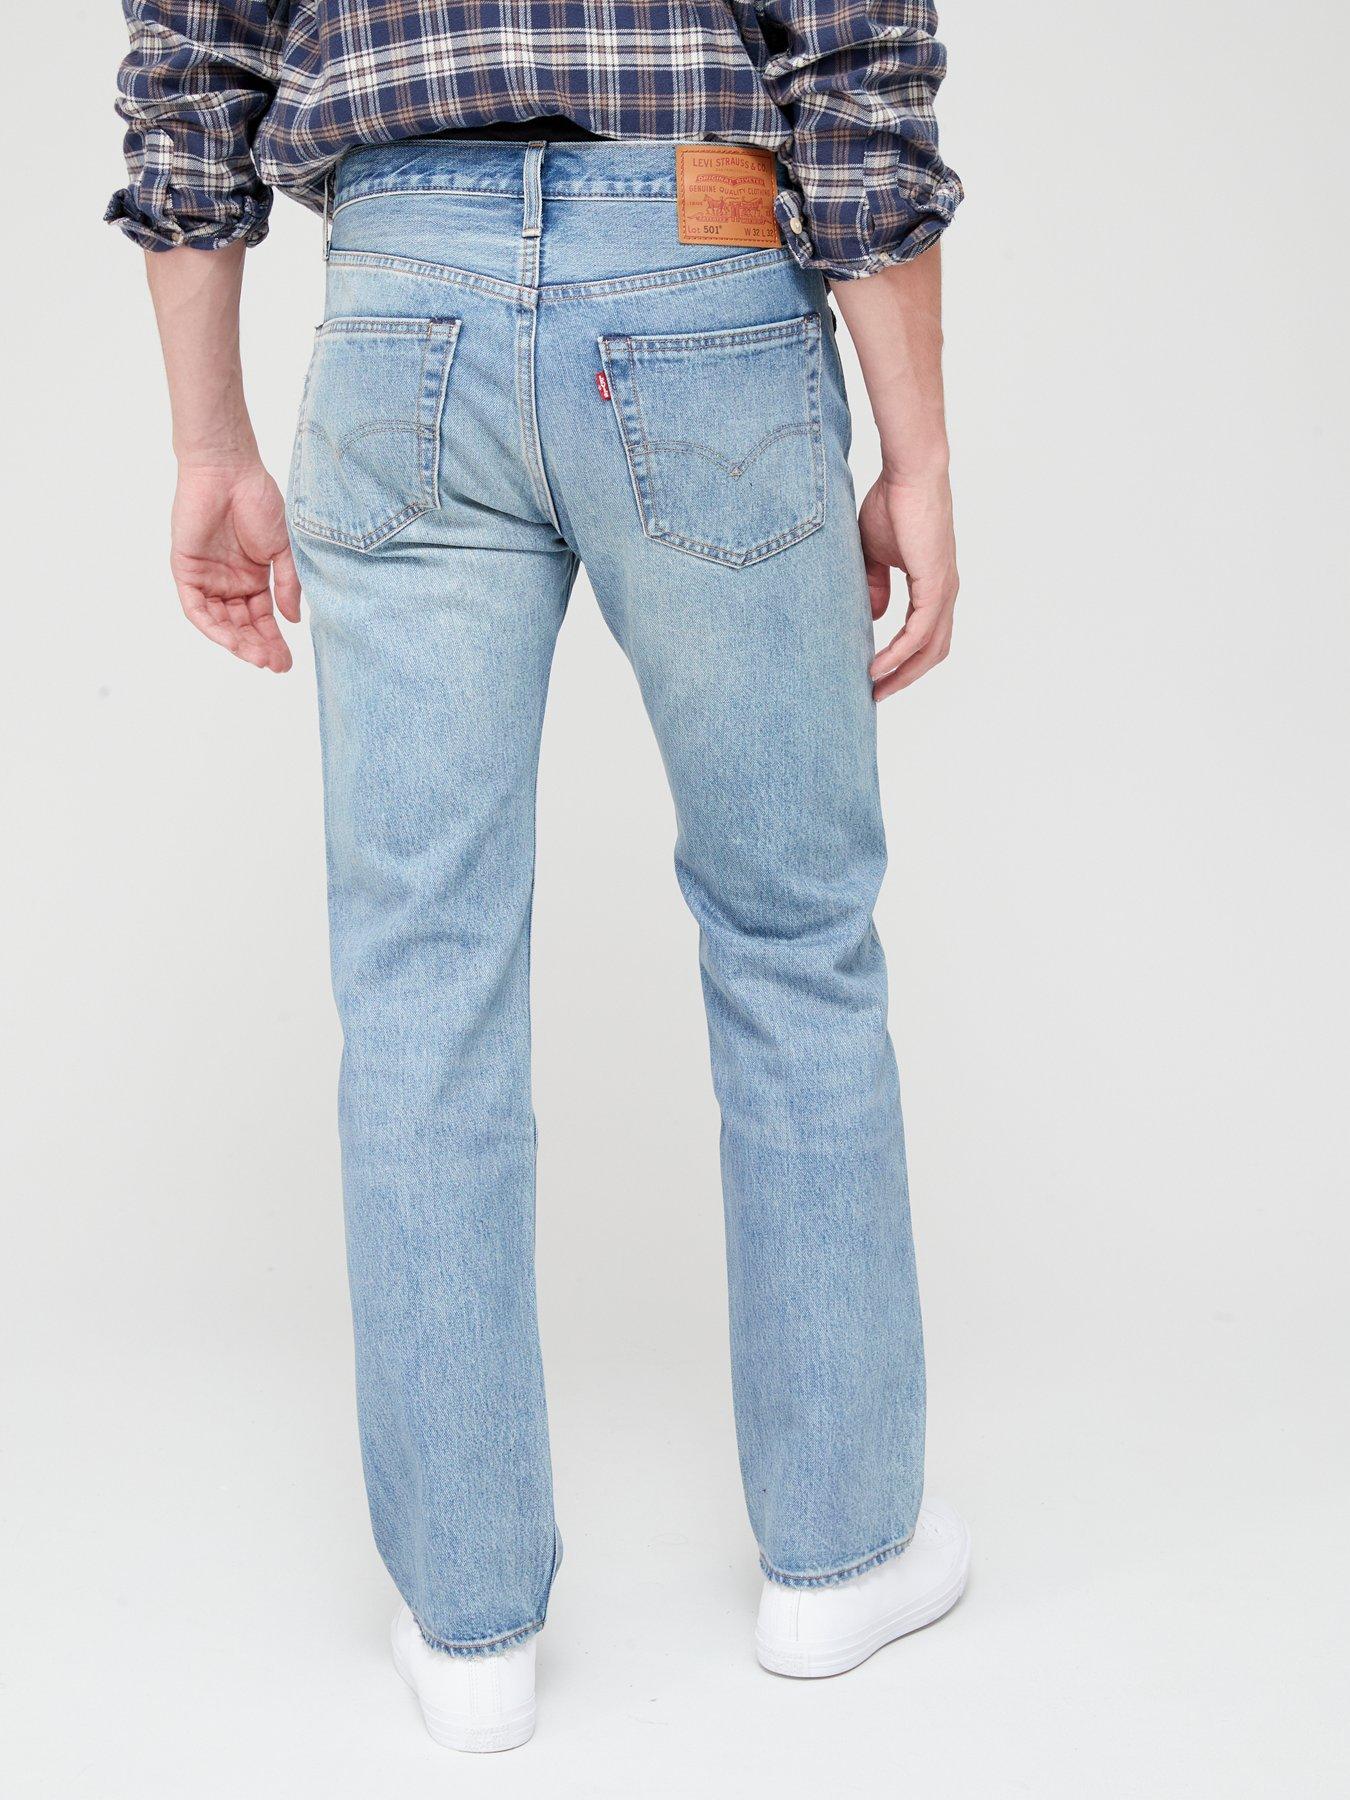 Levi's 501 Original Straight Fit Jeans - Light Wash Blue